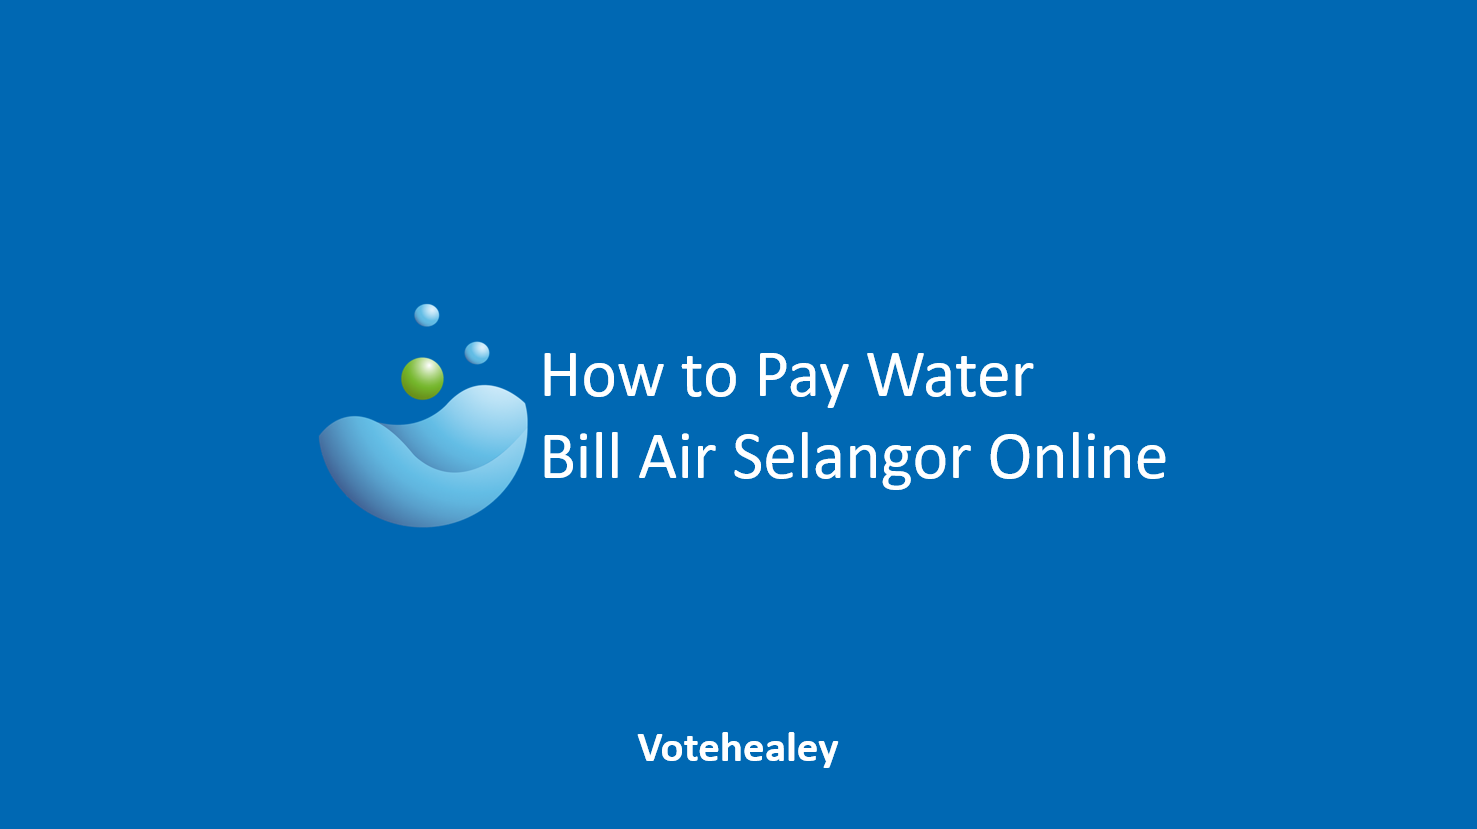 Www.air selangor.com